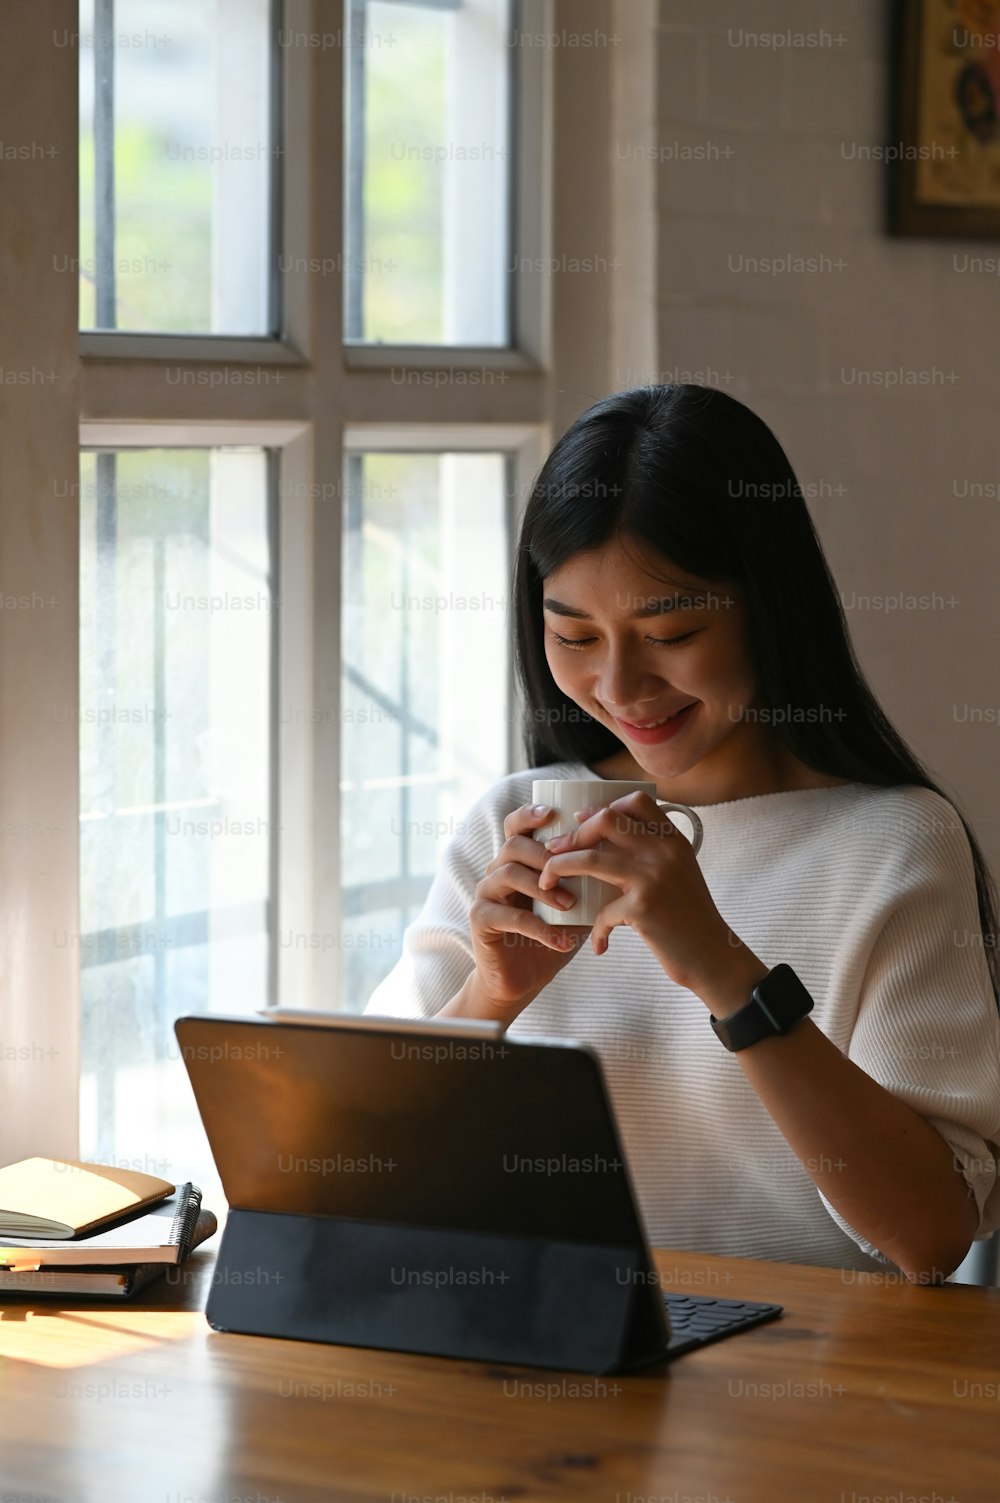 白い綿のドレスを着た若いクリエイティブな女性が、快適なリビングルームを背景に木製のテーブルで作業しながら、コーヒーカップを手にしている写真。